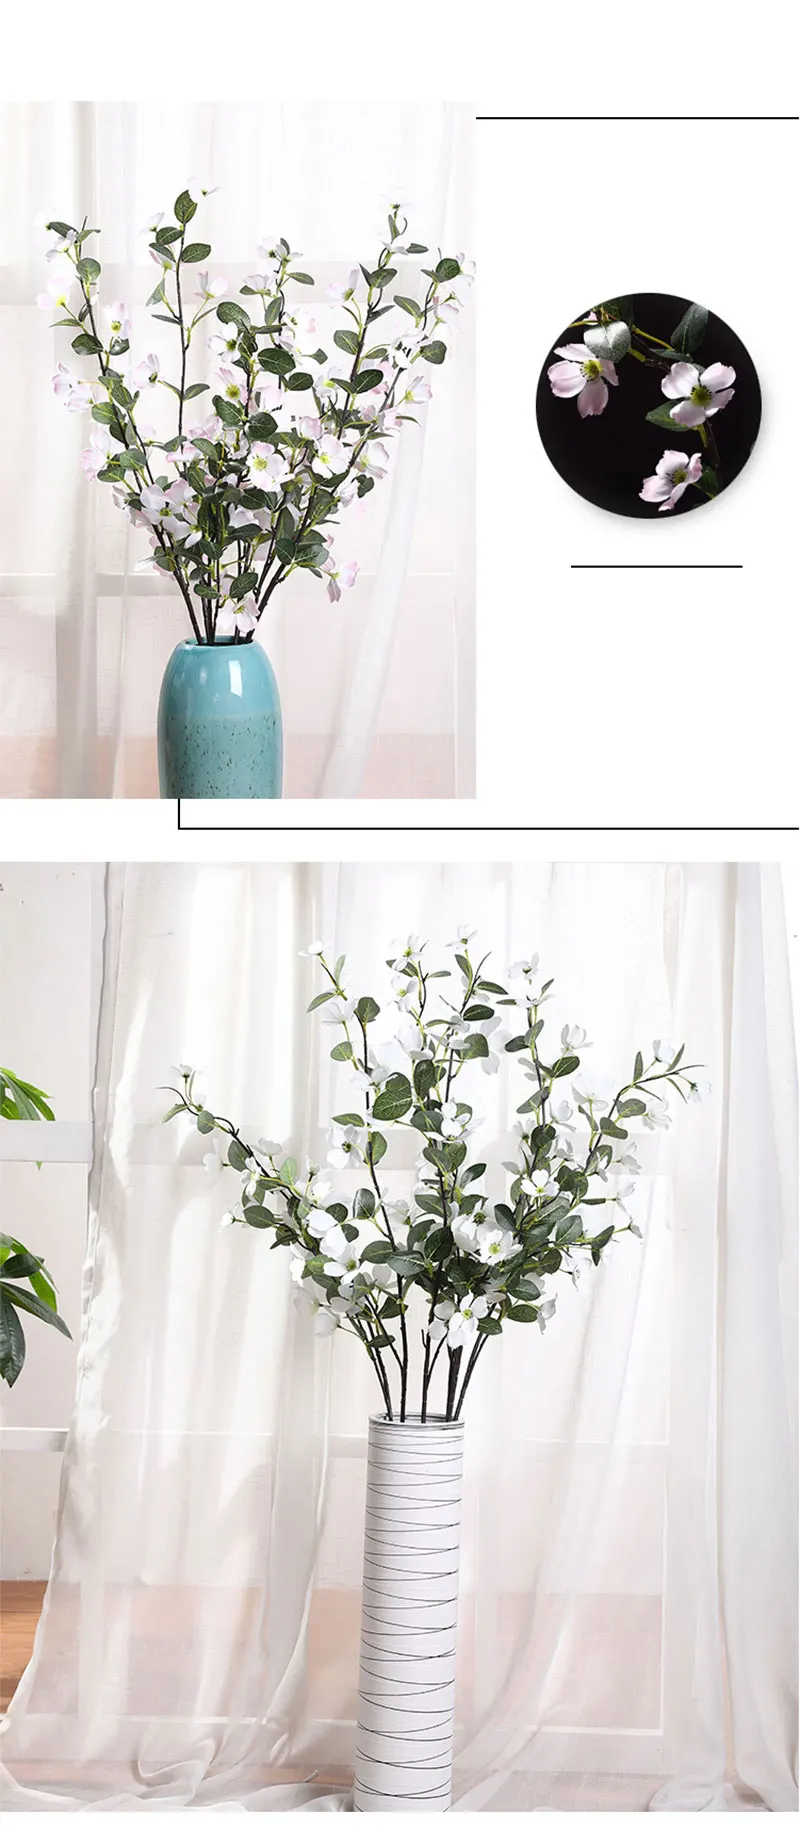 Erxiaobao, 1 шт., искусственные цветы для свадьбы, белые, розовые, искусственные цветы, шелковые цветы для украшения дома, Свадебный декор